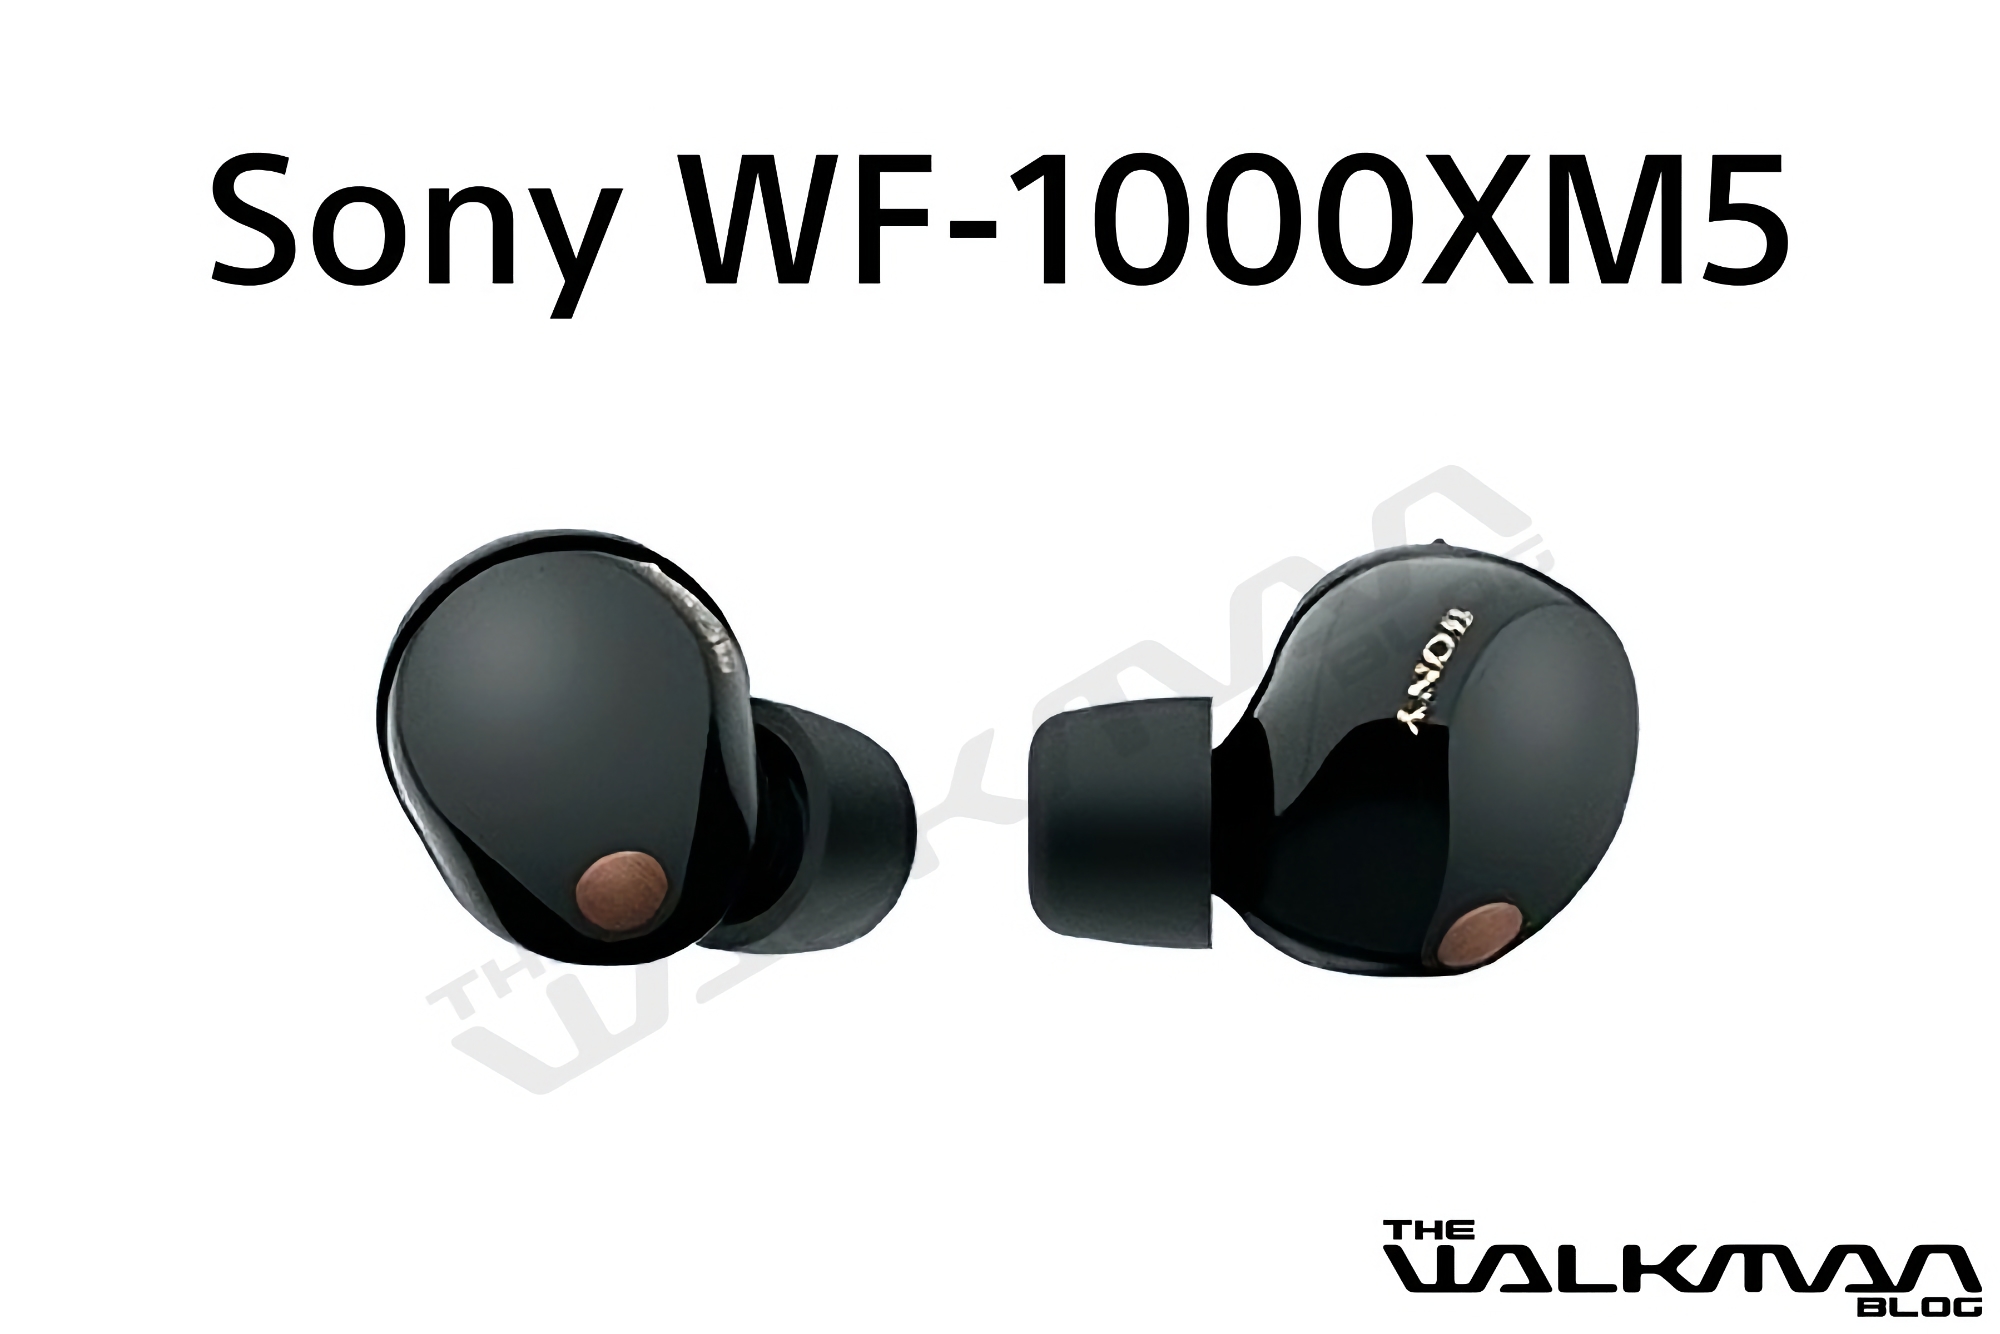 Les nouveaux écouteurs phares TWS WF-1000MX5 de Sony avec ANC et jusqu'à 24 heures d'autonomie de la batterie